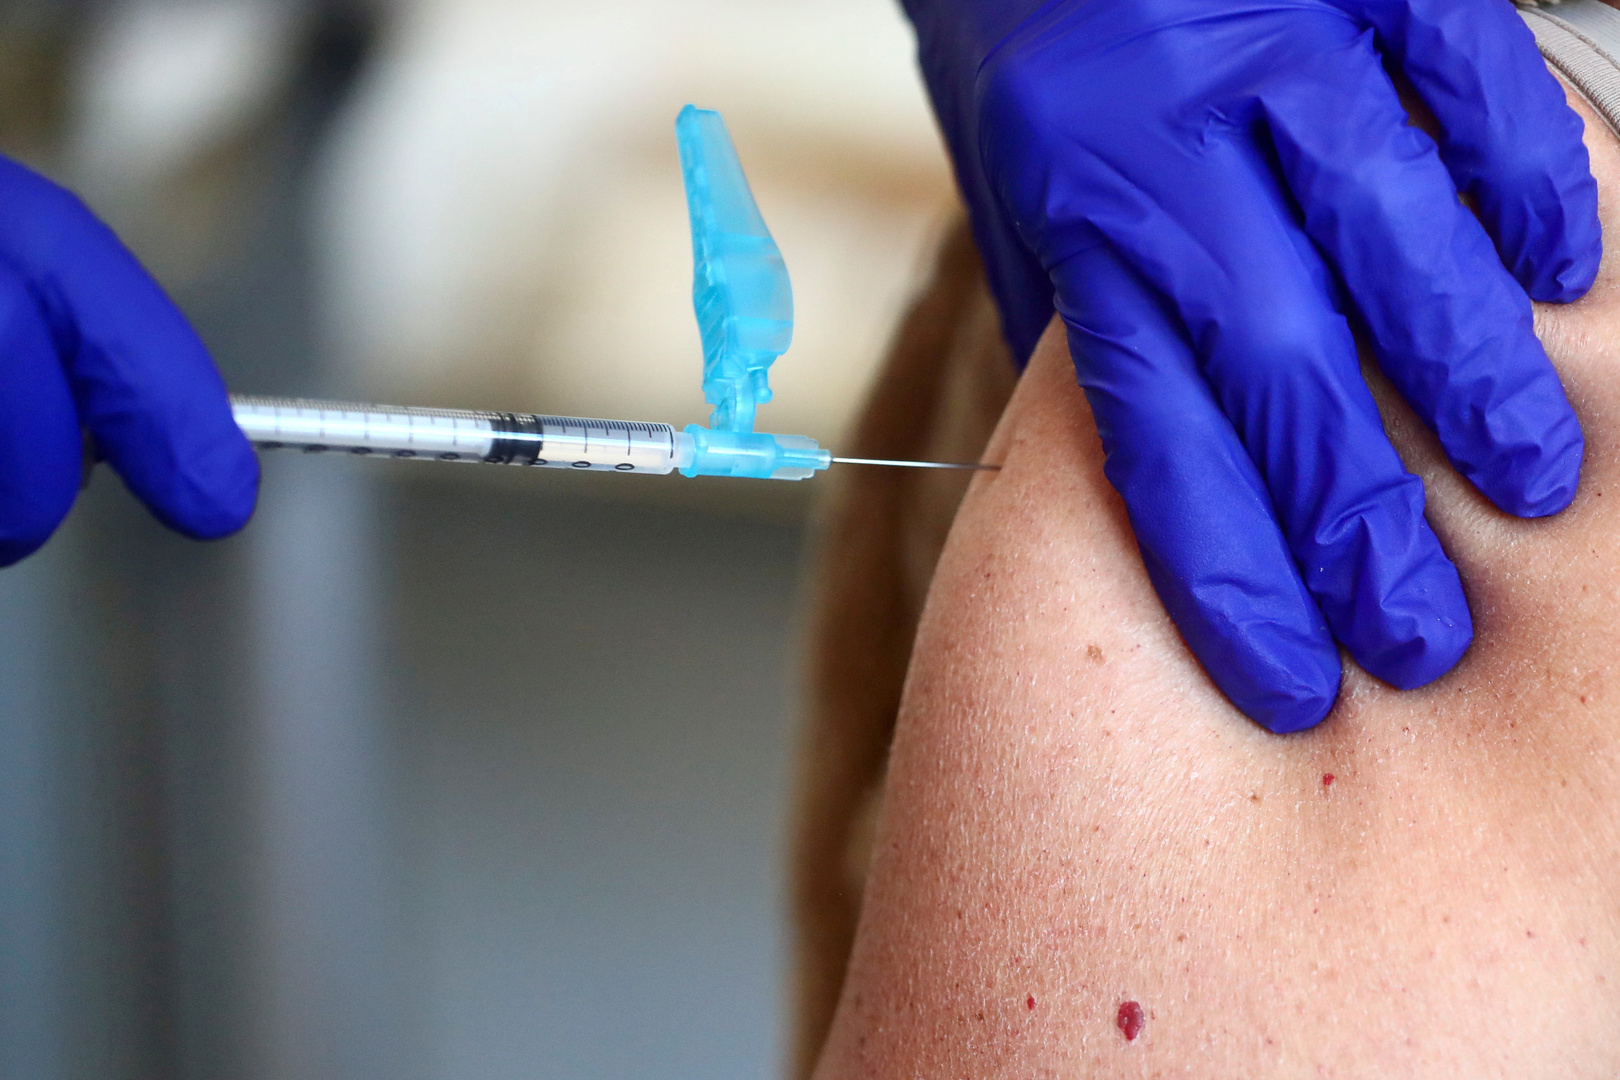 المحكمة الأوروبية لحقوق الإنسان: التطعيم الإلزامي ضروري